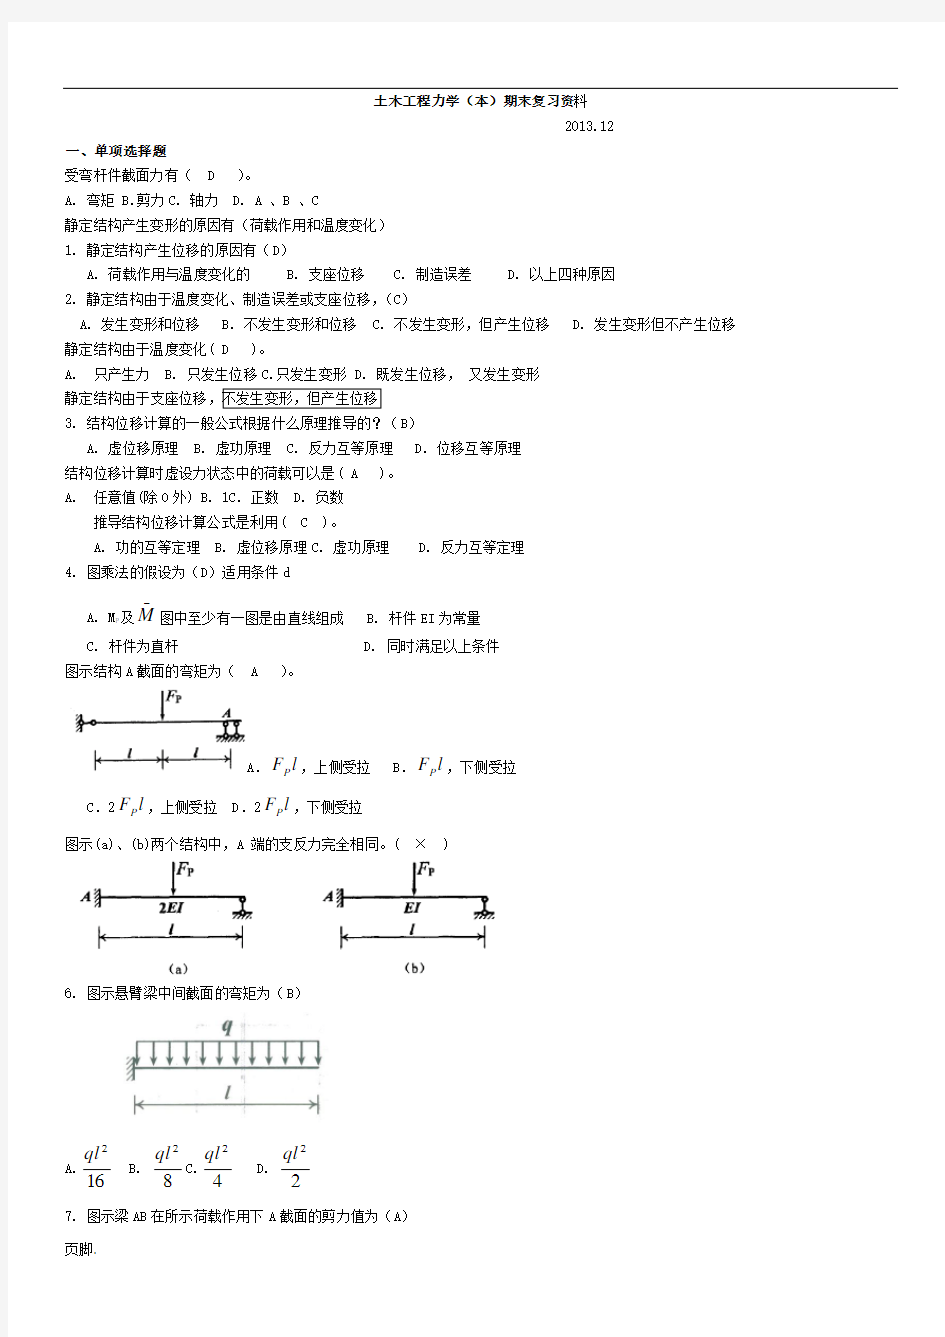 土木工程力学(本)期末复习资料-2015